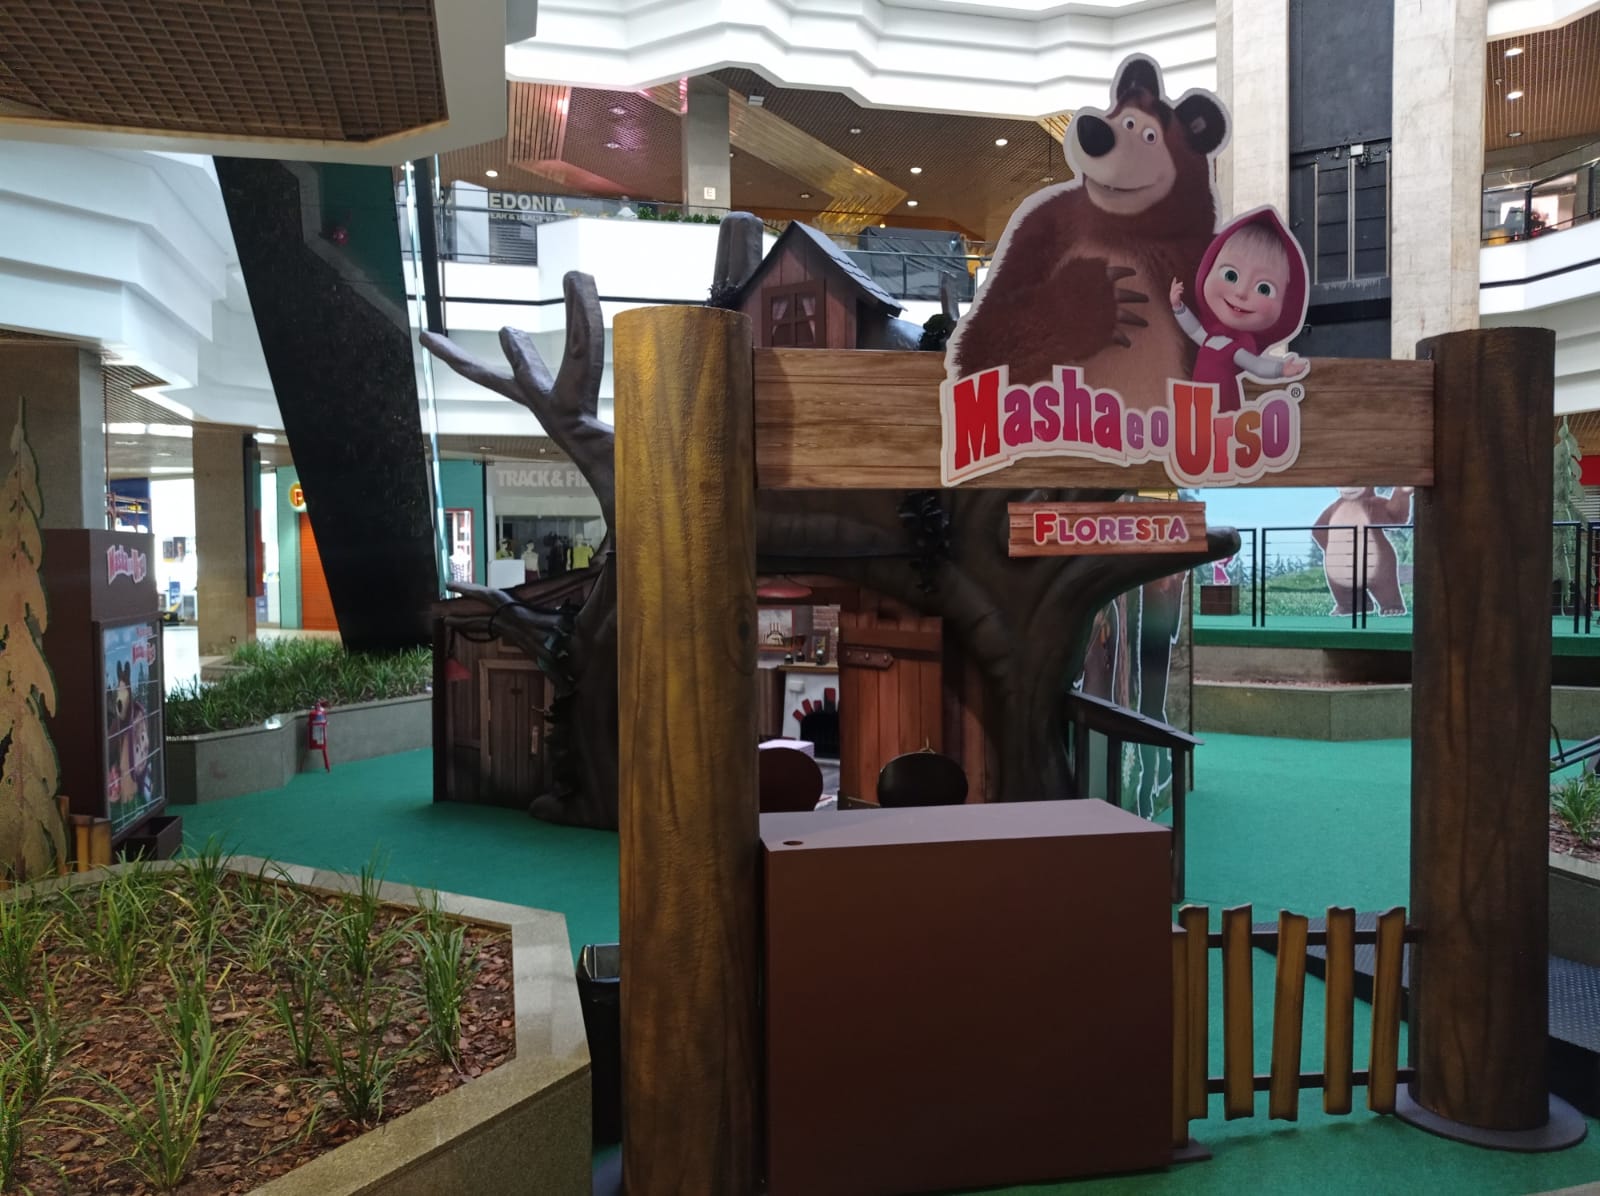 Floresta da Marsha e o Urso chega ao Beiramar Shopping de Florianópolis